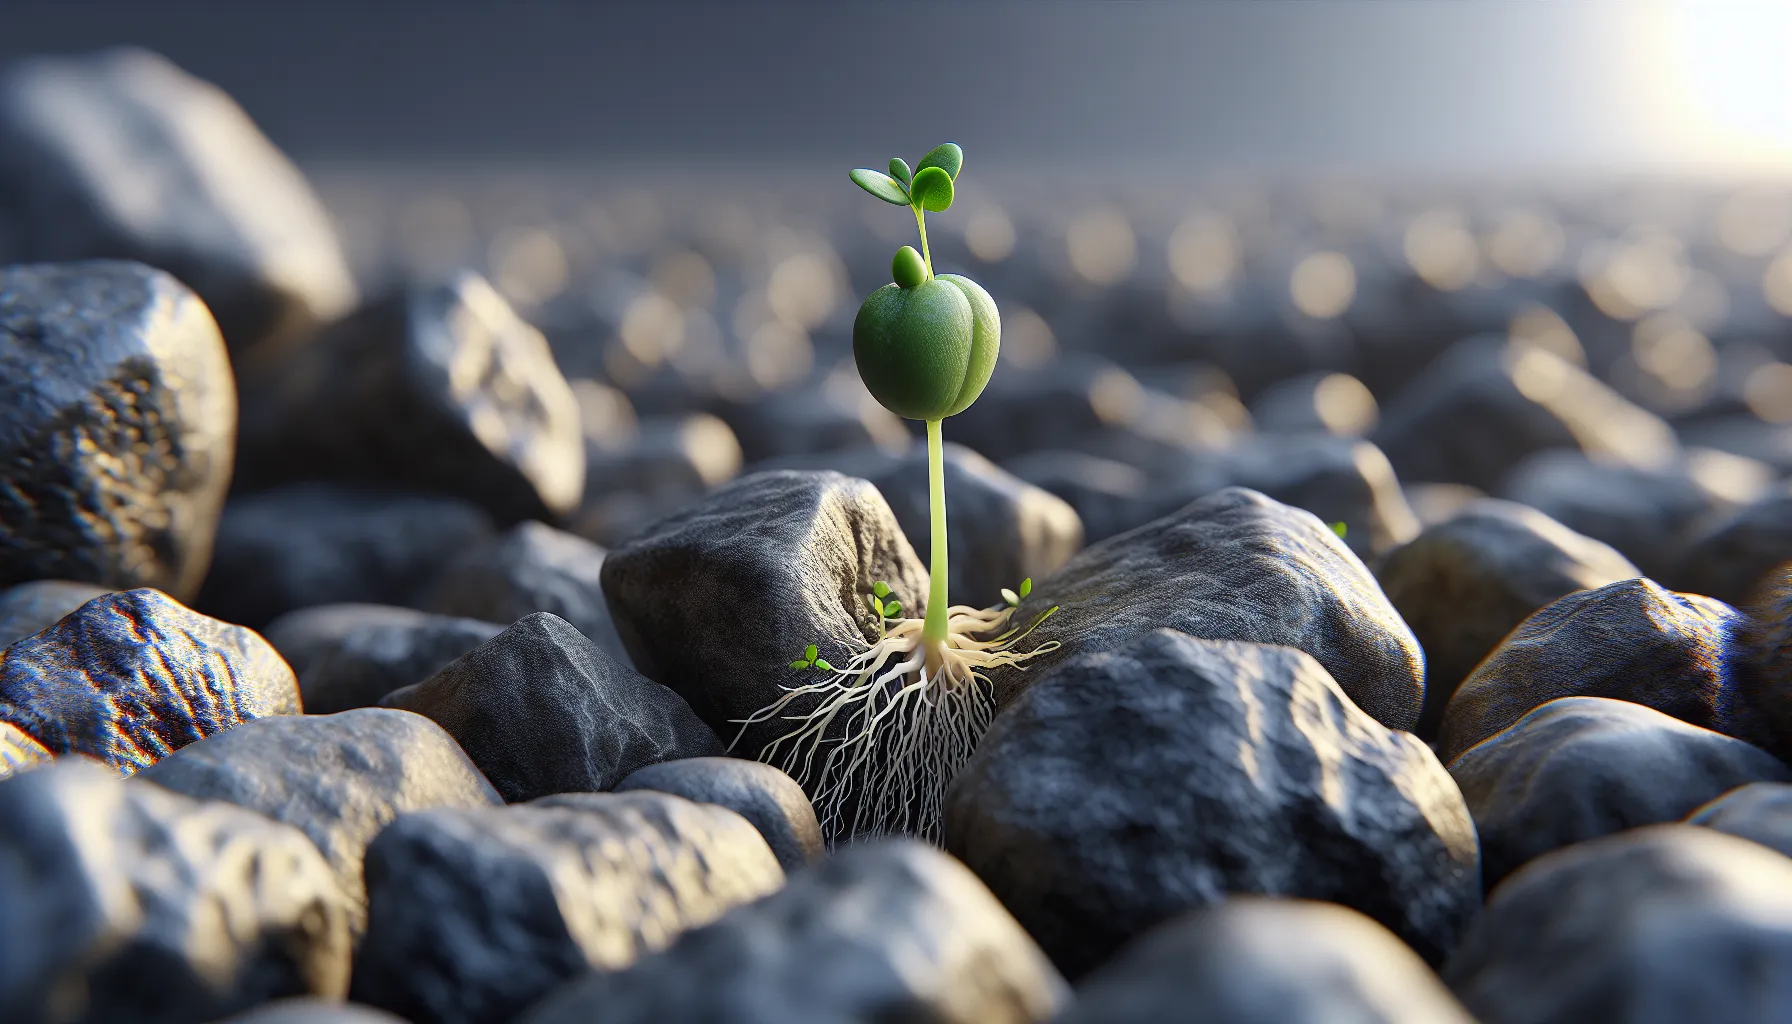 Una semilla de mostaza creciendo entre las rocas, representando la perseverancia según la Biblia